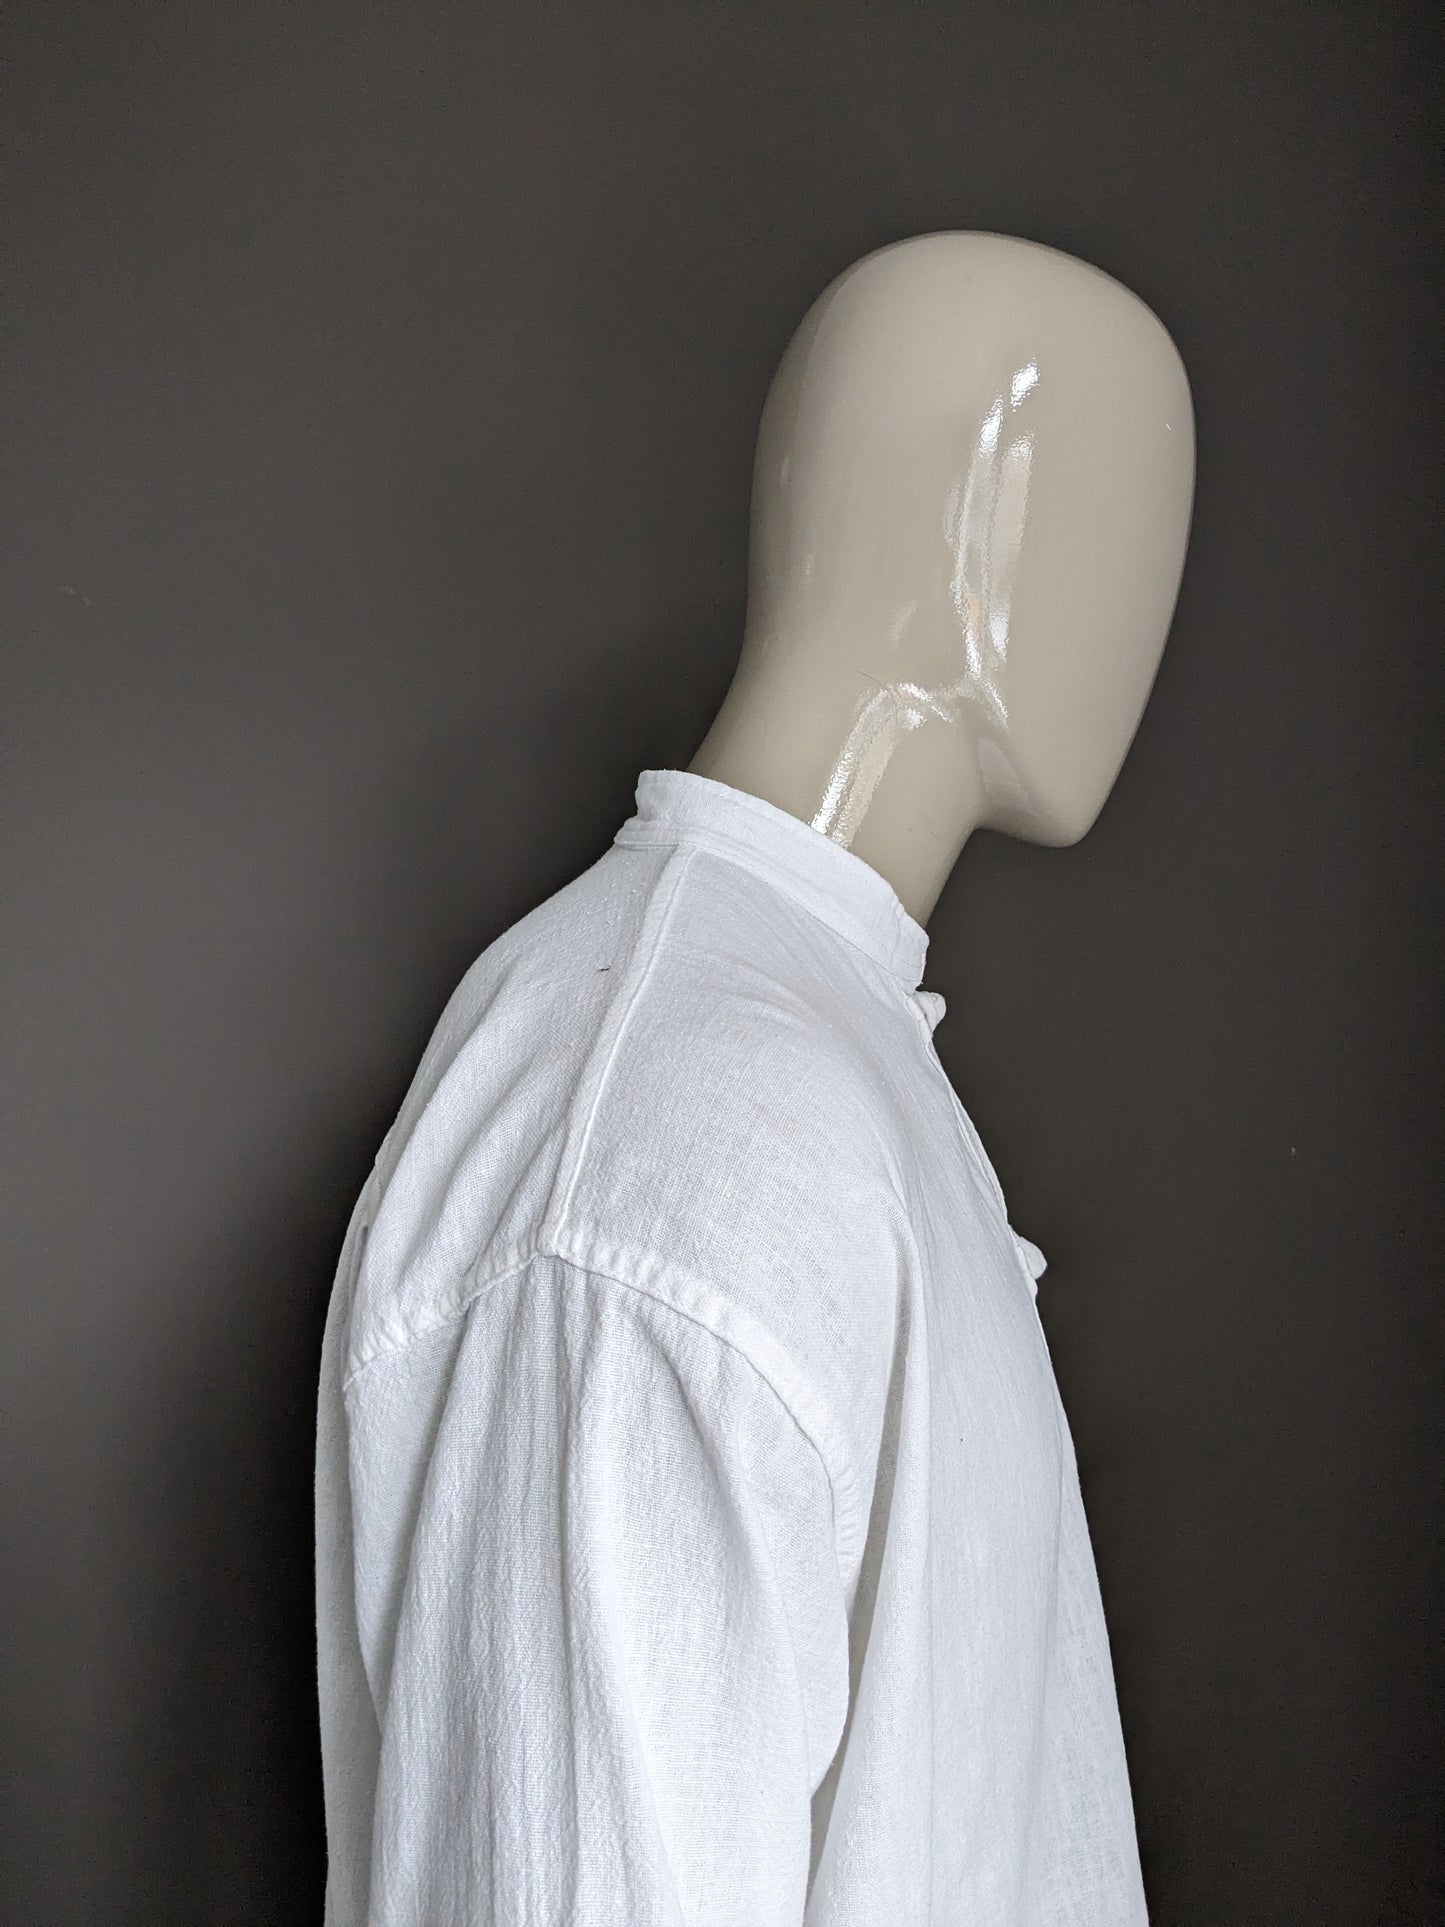 Camisa vintage con cuello mao / elevado. Nudos y bolsas de algodón. Tamaño xl.